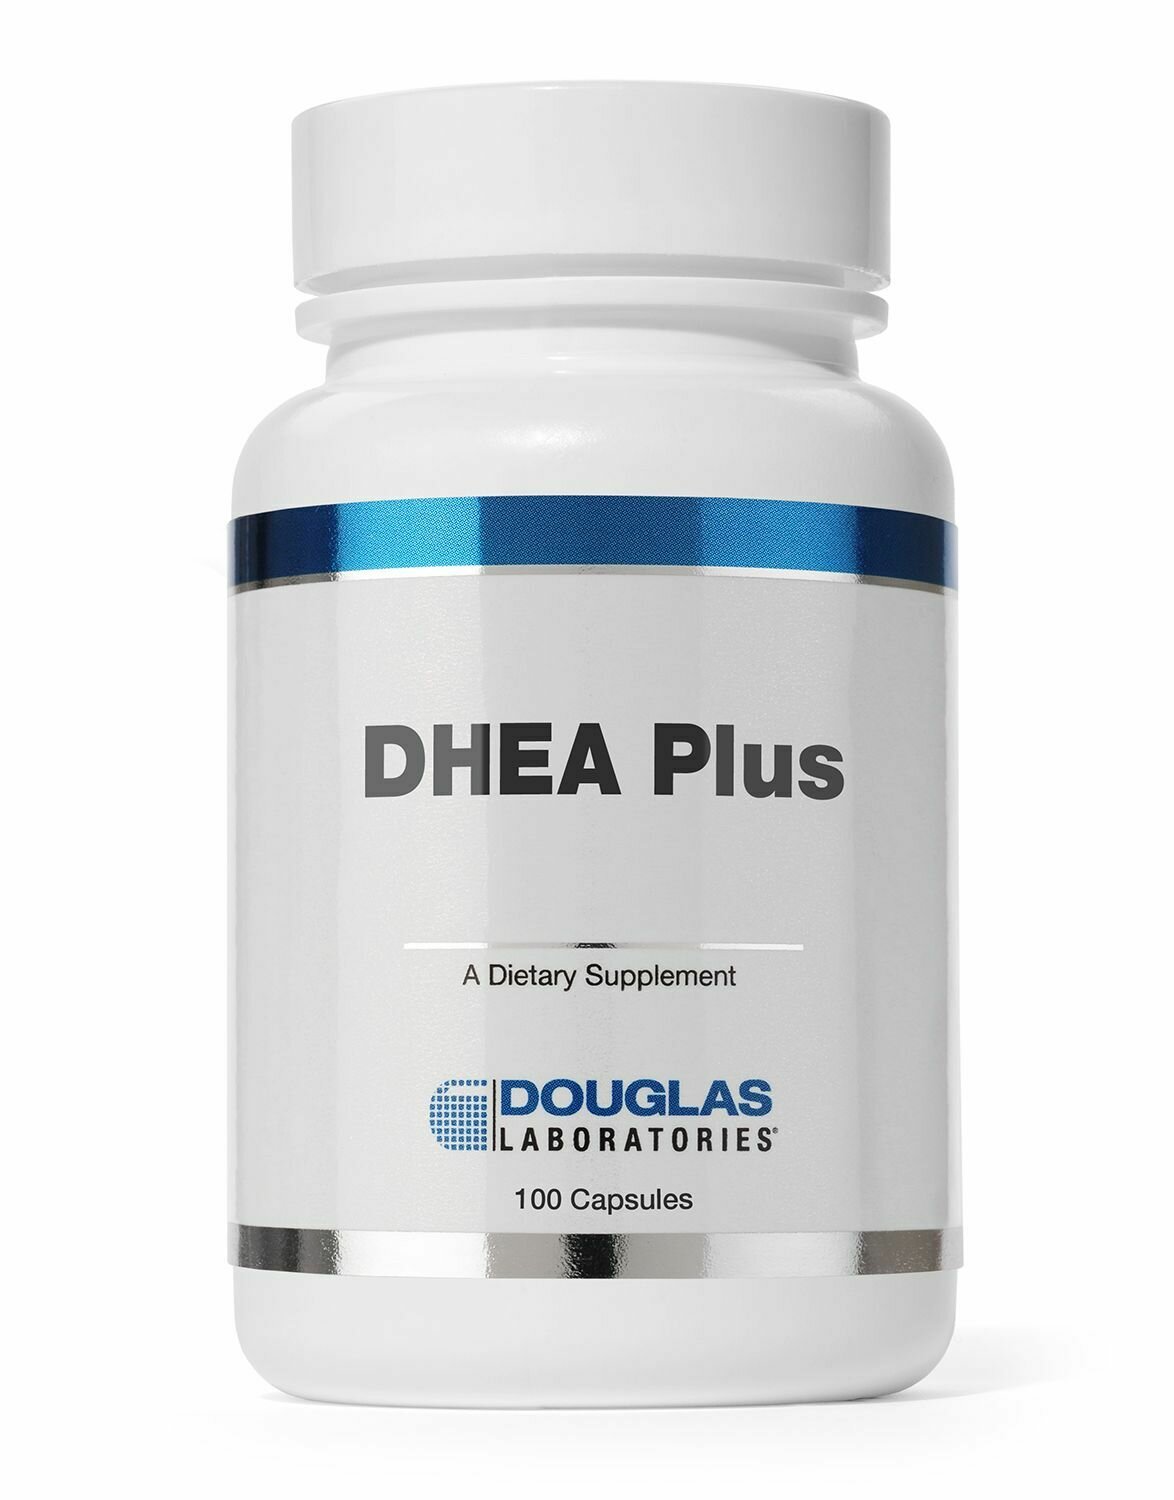 DHEA Plus